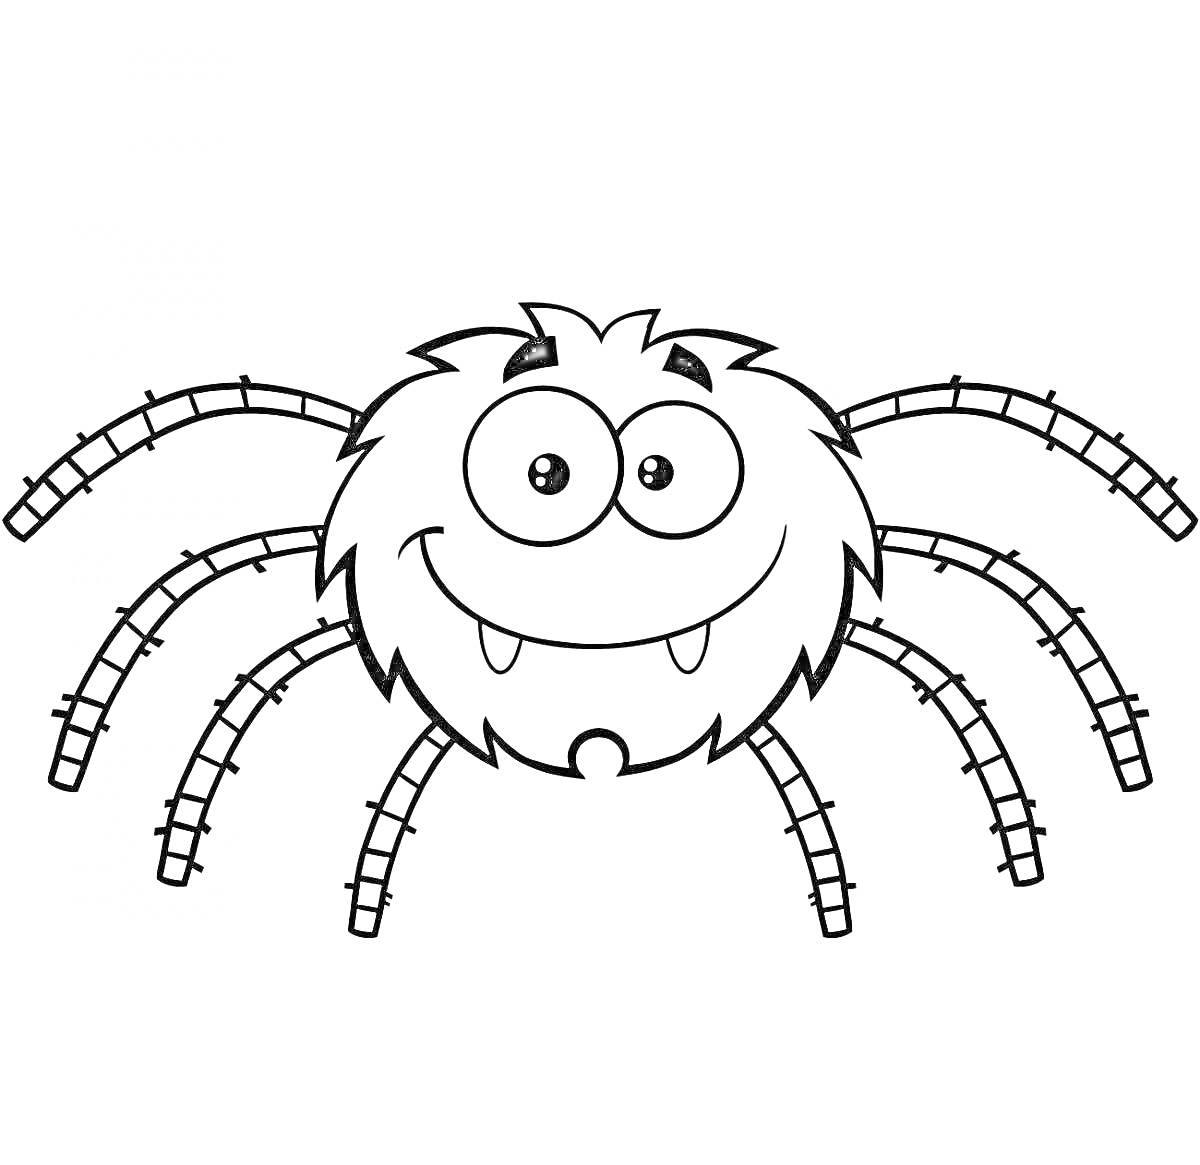 Раскраска Милый улыбающийся паук с большими глазами и острыми зубами